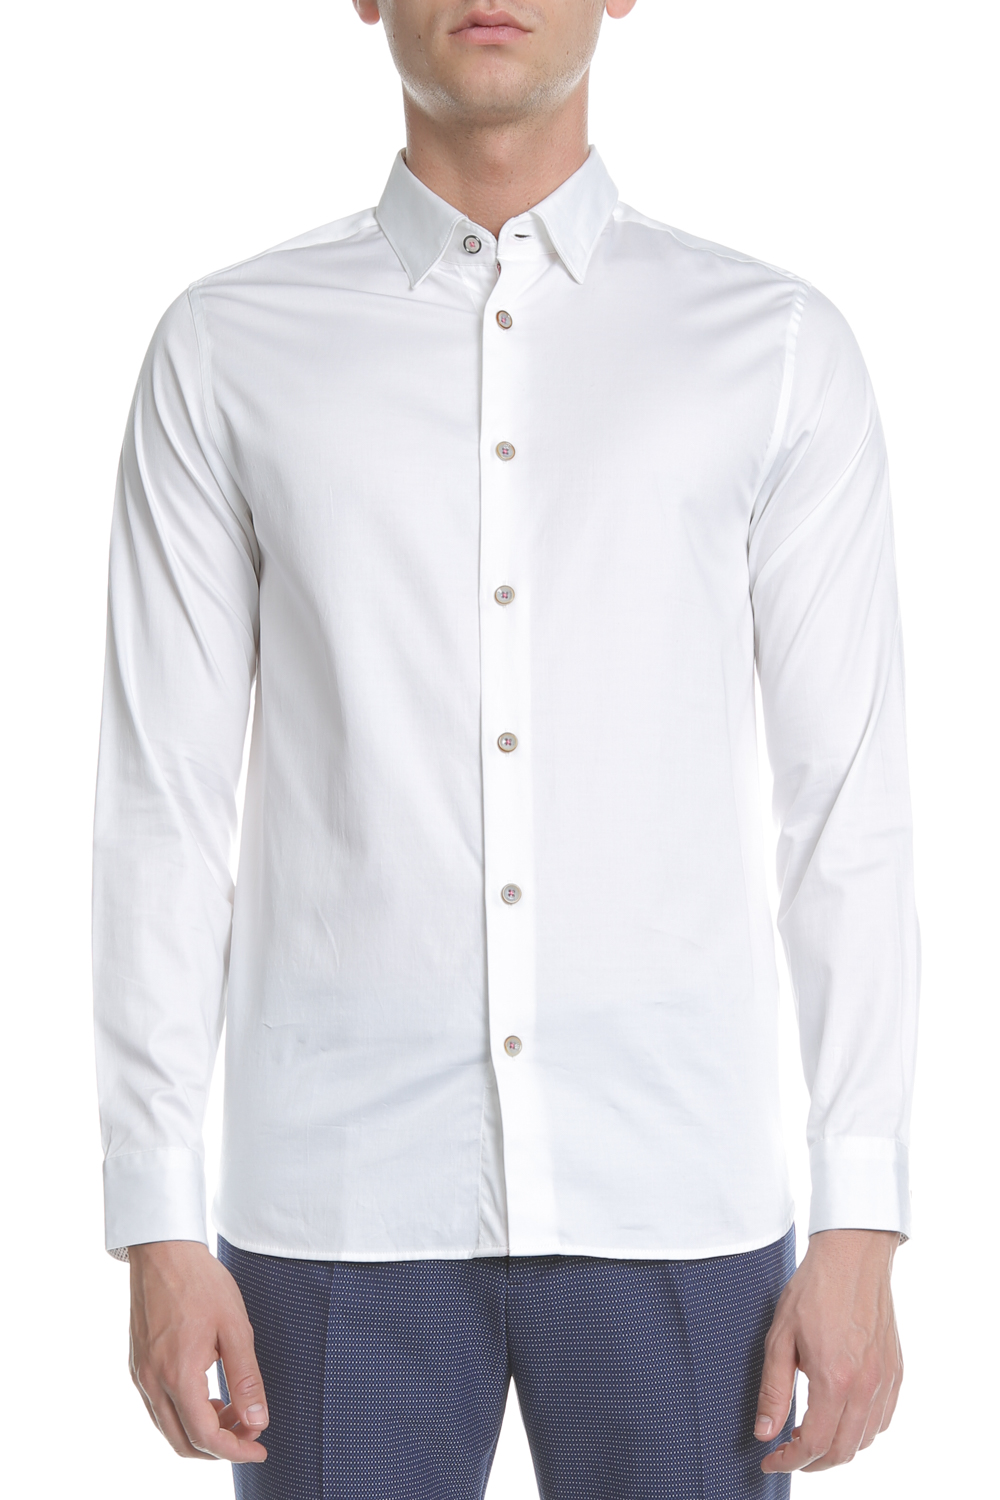 Ανδρικά/Ρούχα/Πουκάμισα/Μακρυμάνικα TED BAKER - Ανδρικό πουκάμισο TED BAKER λευκό